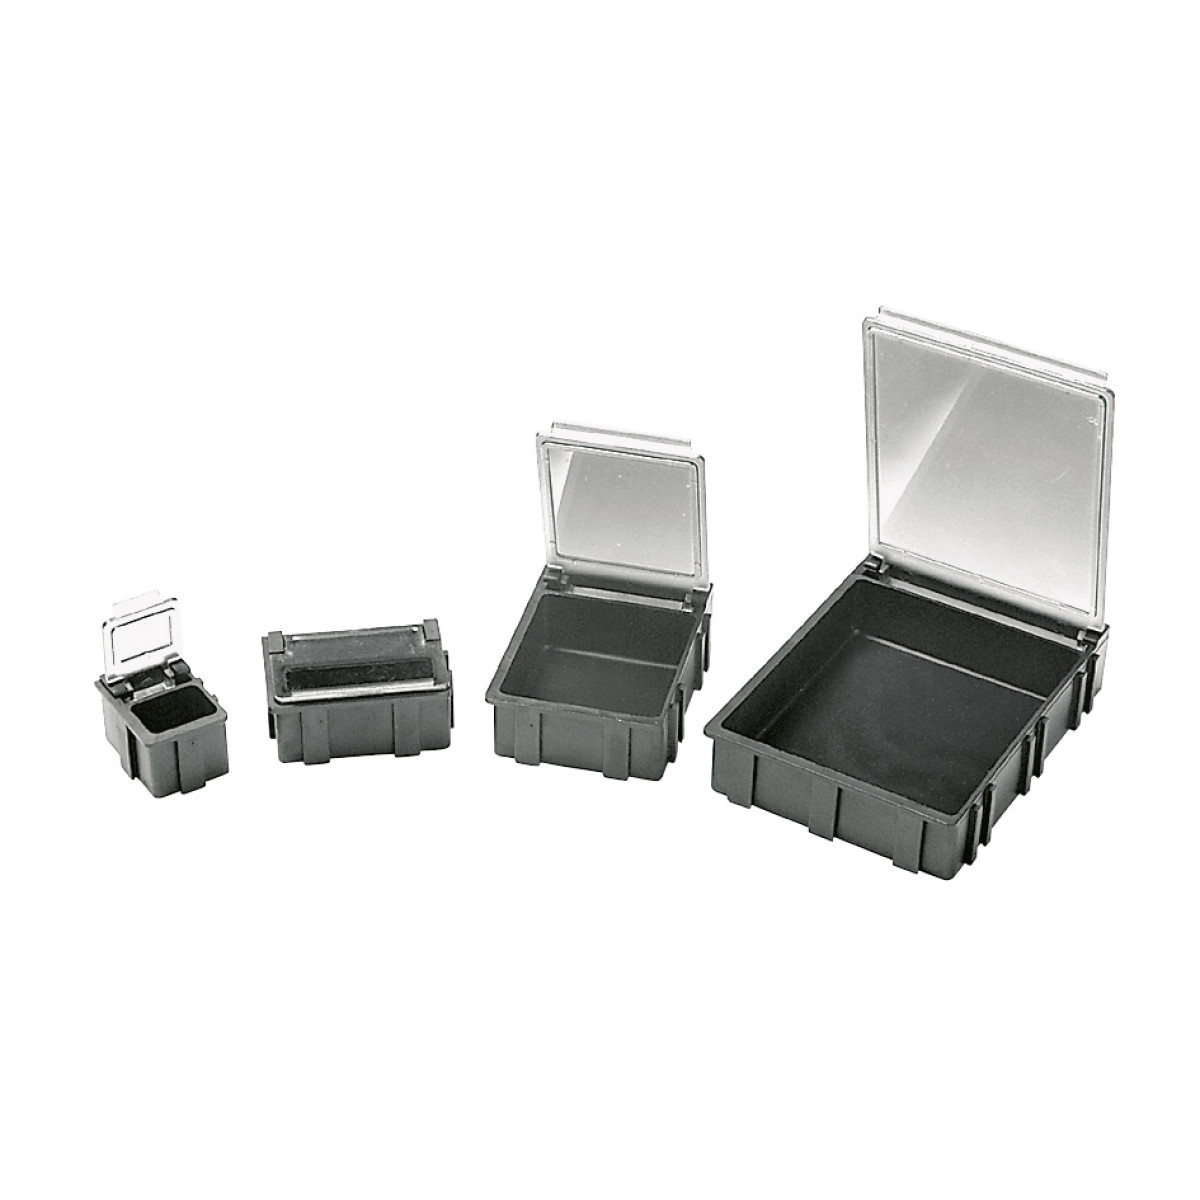 SMD-Klappboxen schwarz mit transparentem, metallisiertem Deckel